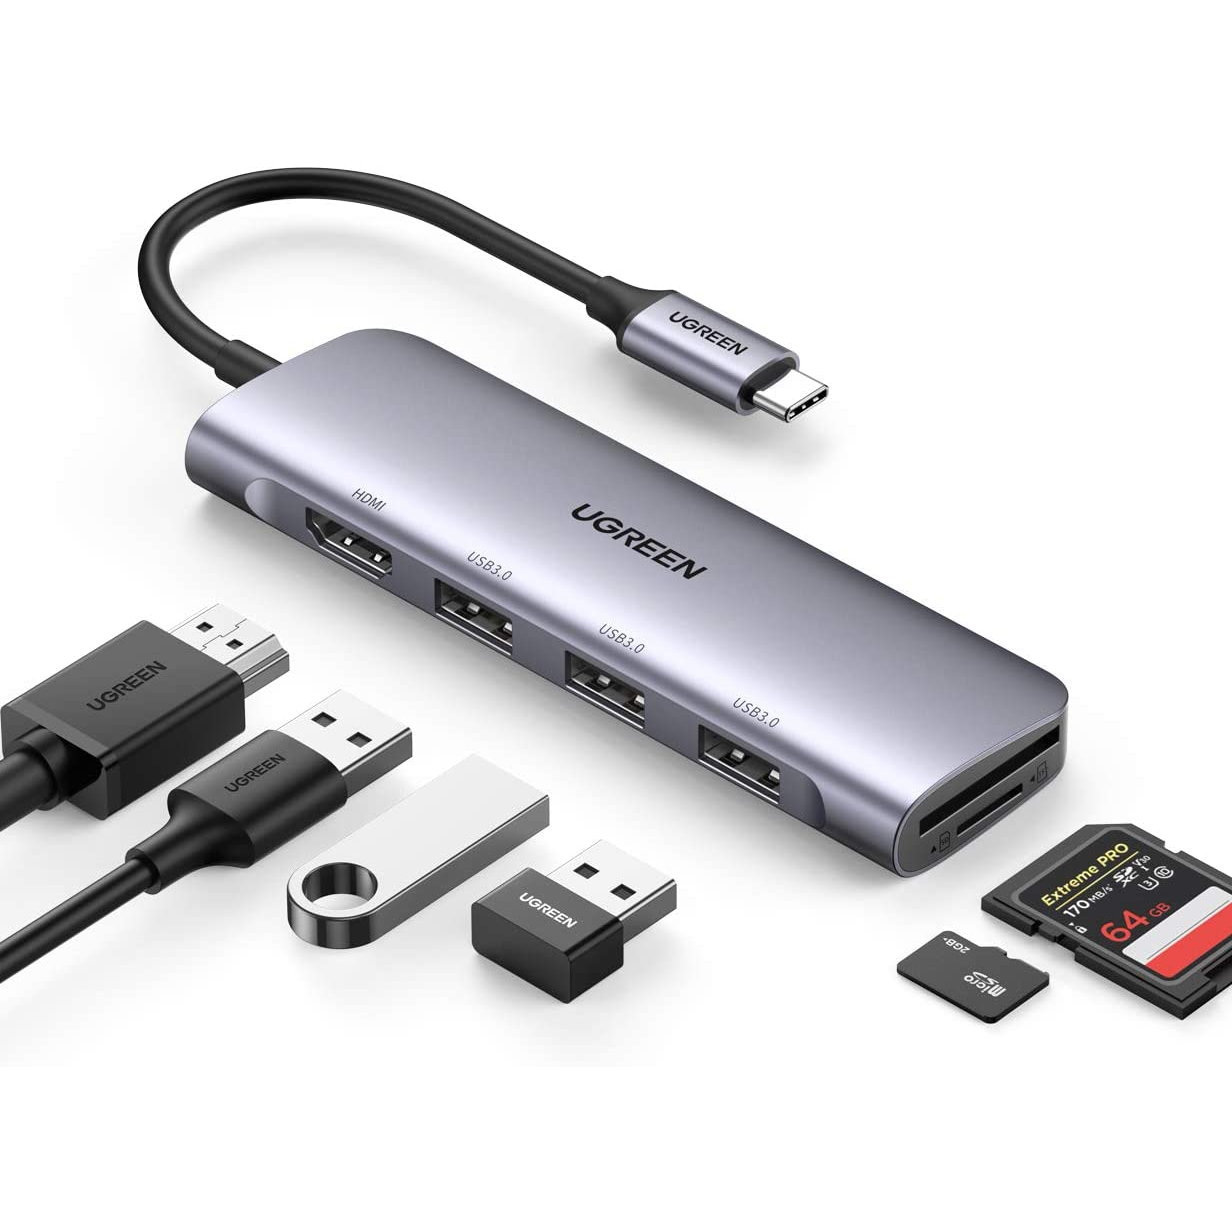  Adaptador de corriente USB 2 en 1 y cable OTG para Fire TV Stick,  cable de alimentación USB de 2ª generación para  Fire Stick. Puerto  USB de TV para alimentar